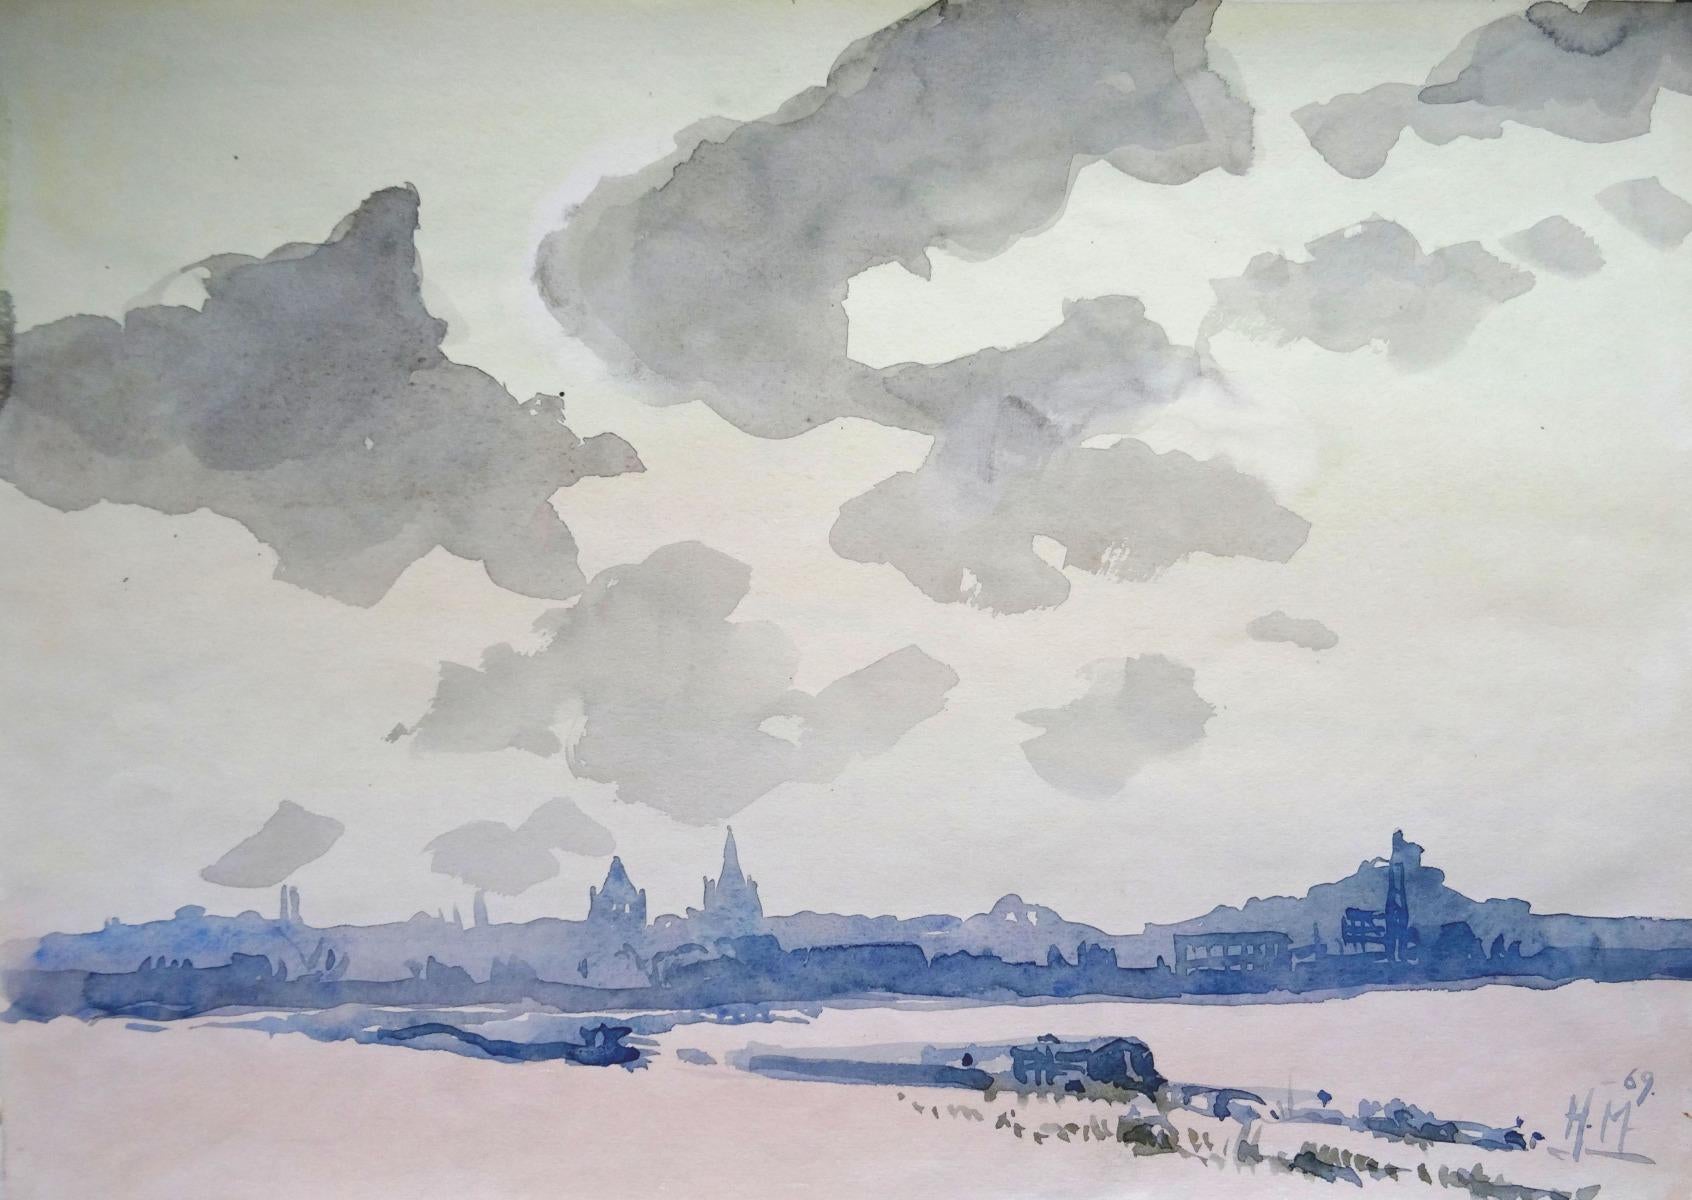 Herberts Mangolds Landscape Painting - City 1969, paper/watercolor, 29x40.5 cm